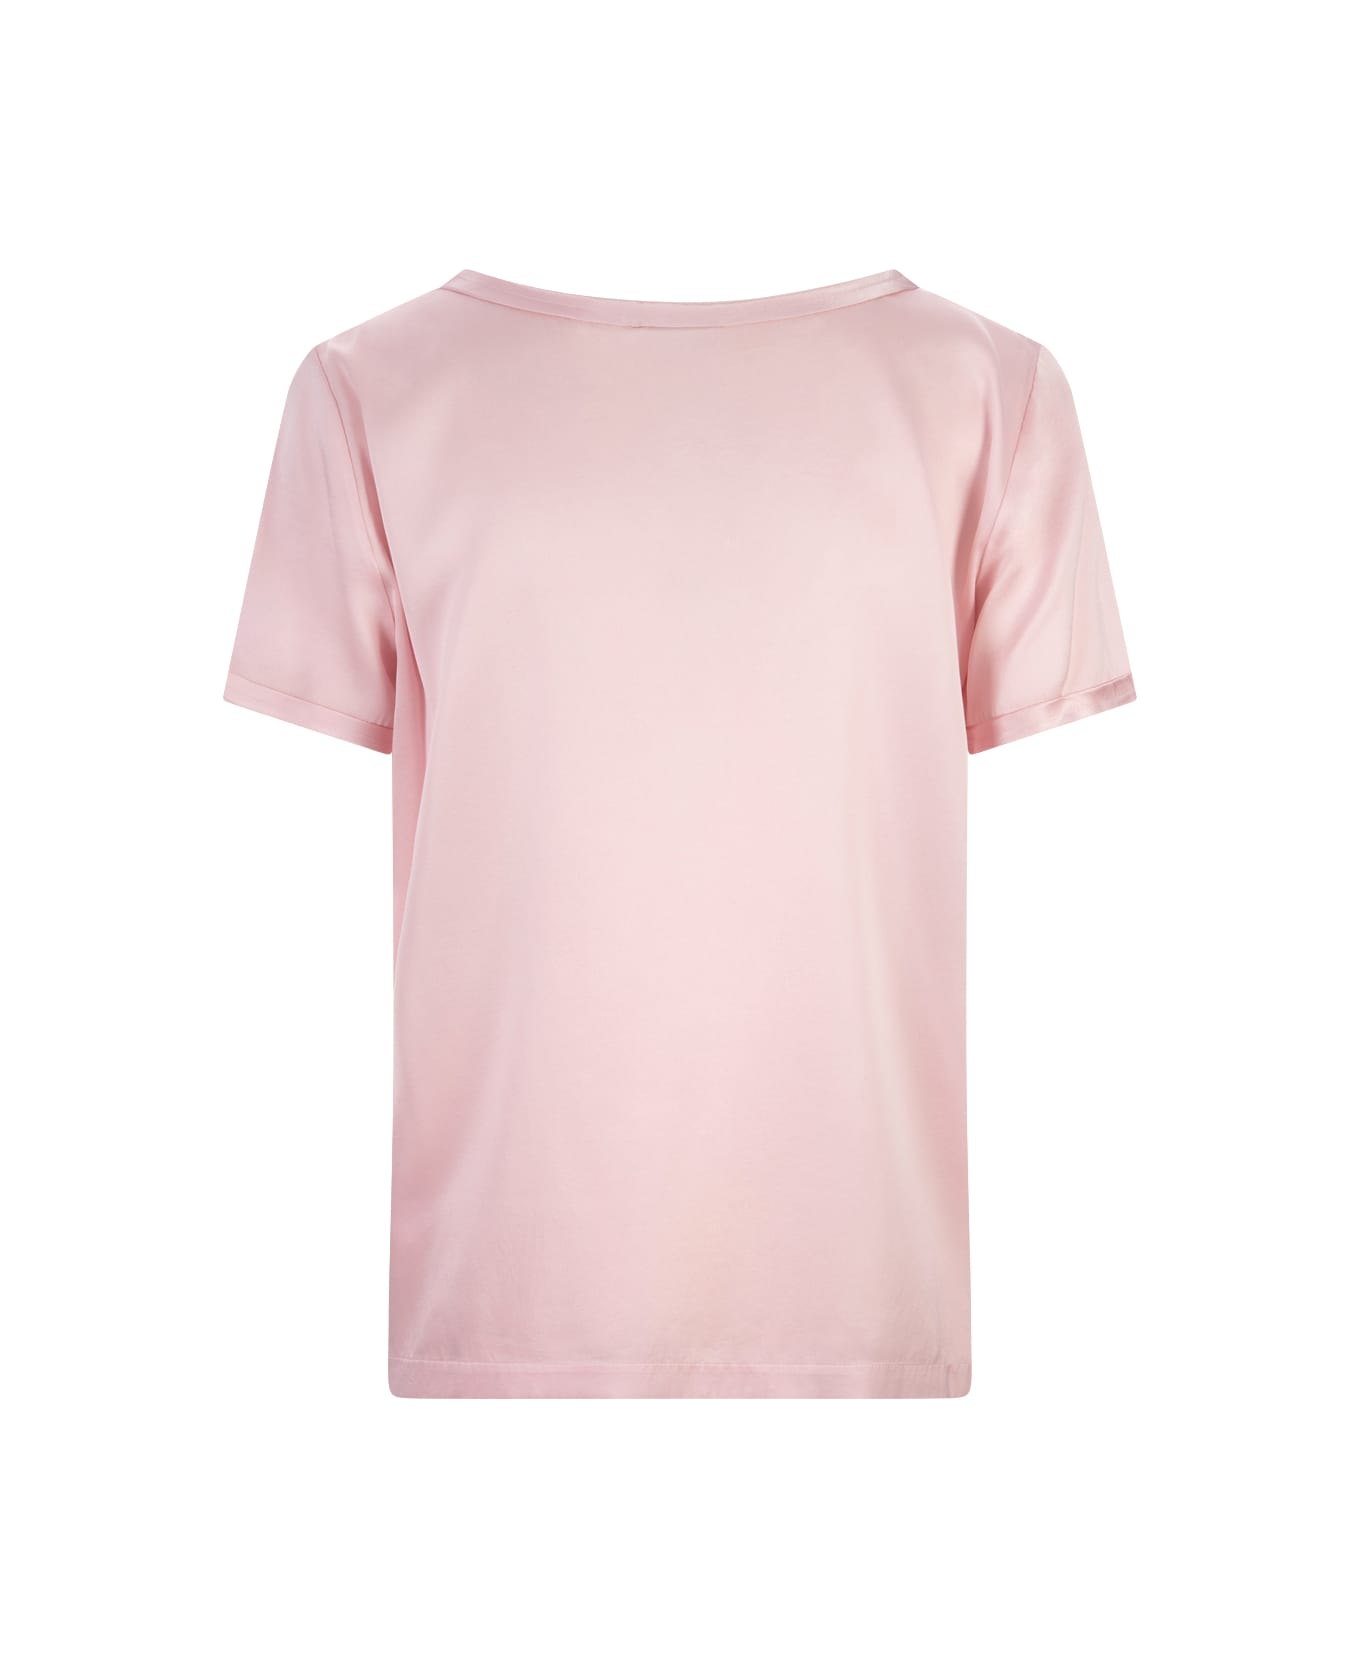 Her Shirt Pink Silk T-shirt - Pink